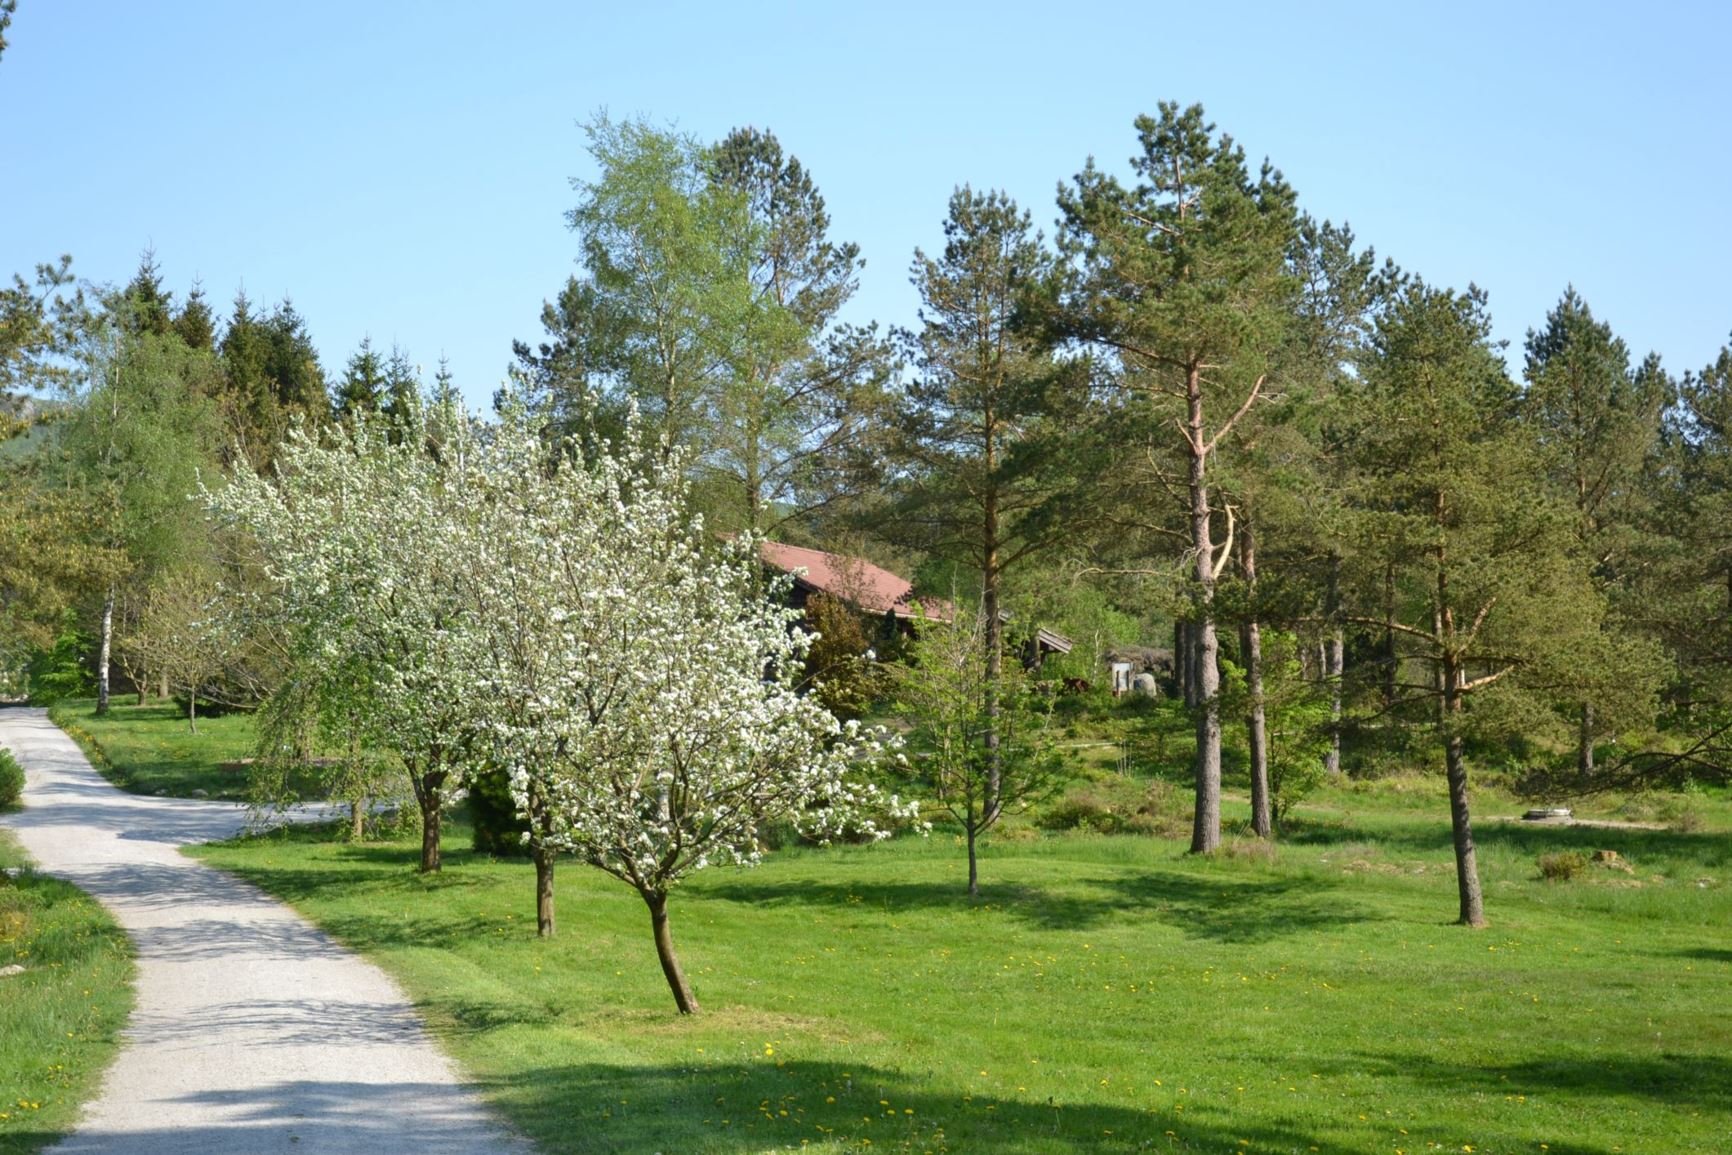 Arboretum view